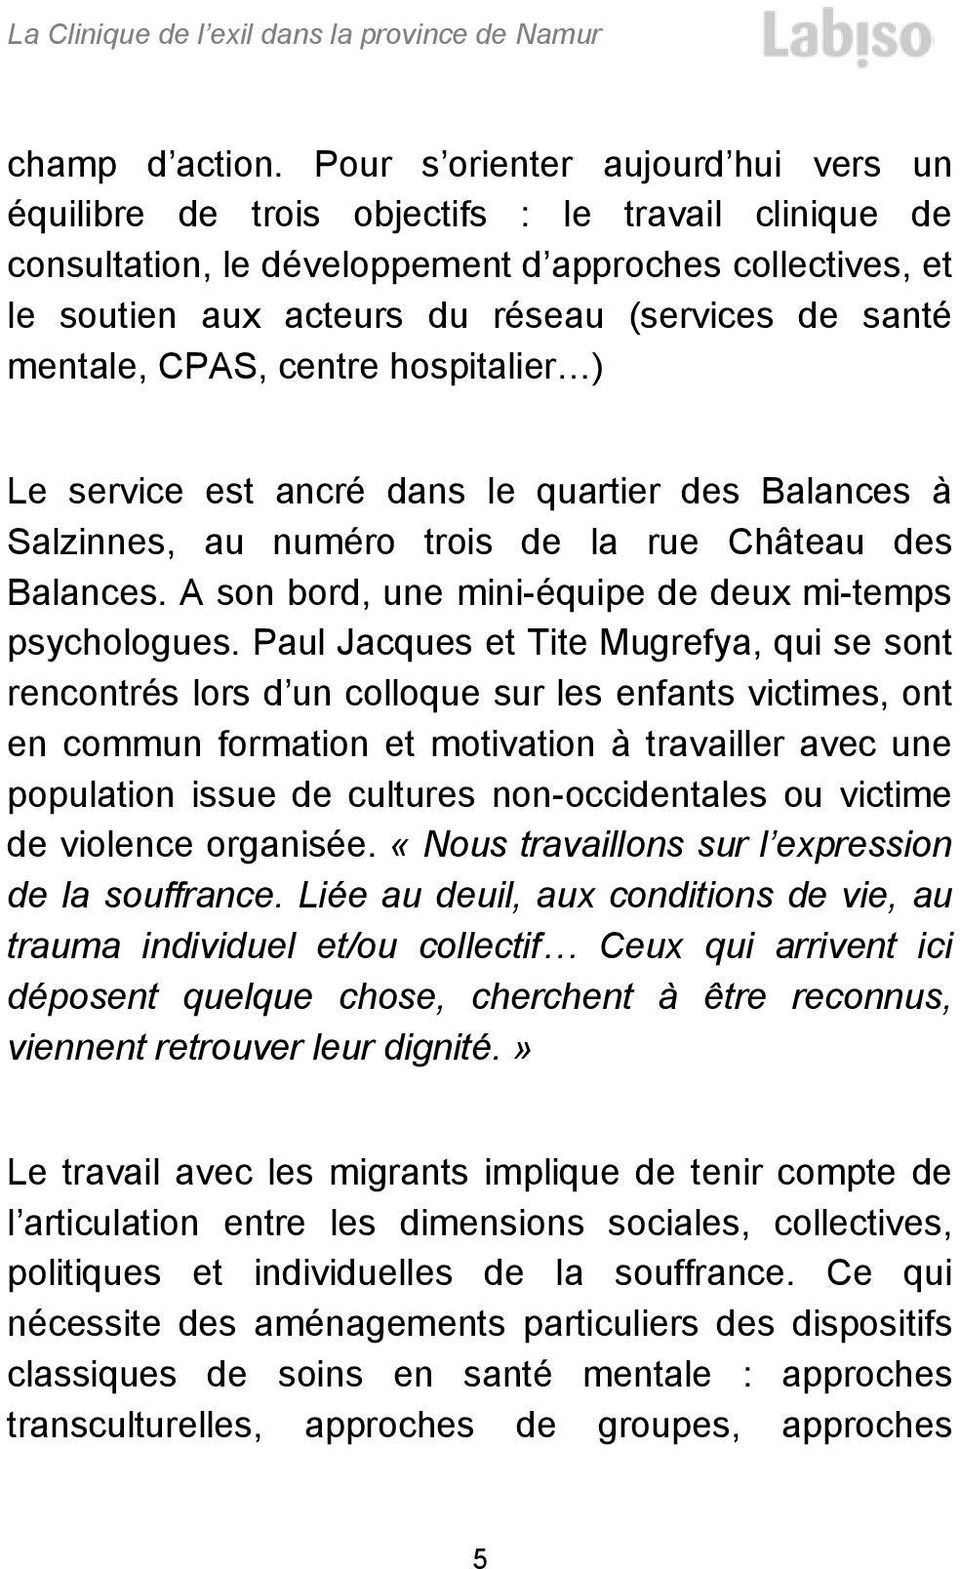 santé mentale, CPAS, centre hospitalier ) Le service est ancré dans le quartier des Balances à Salzinnes, au numéro trois de la rue Château des Balances.